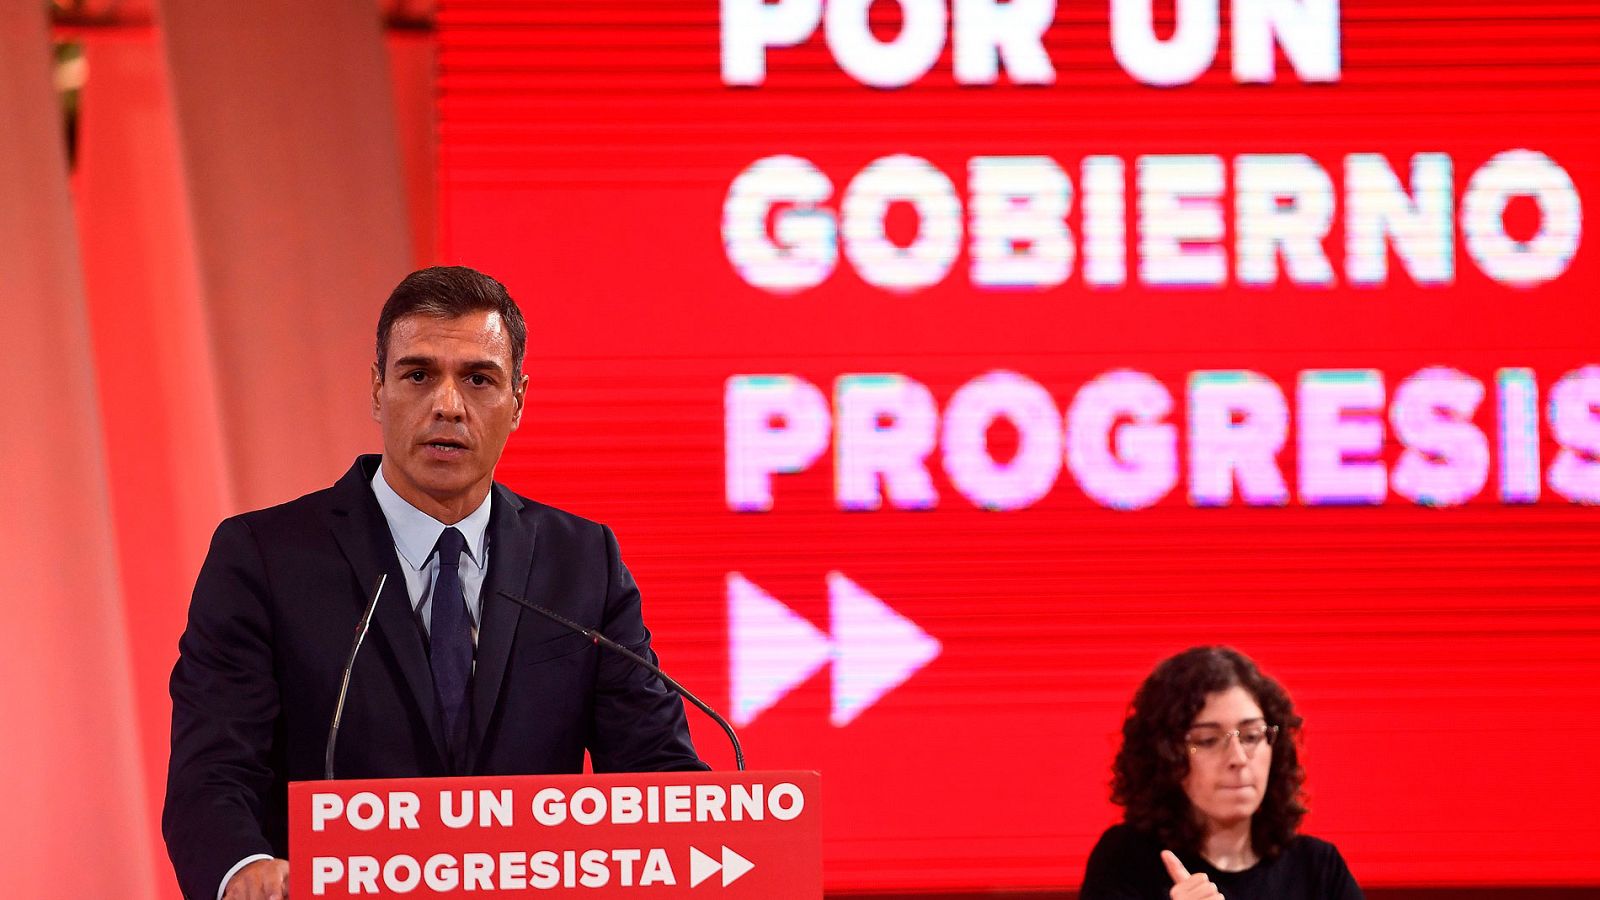 Sánchez ofrece a Podemos altos cargos en instituciones relevantes pero no acepta un gobierno de coalición